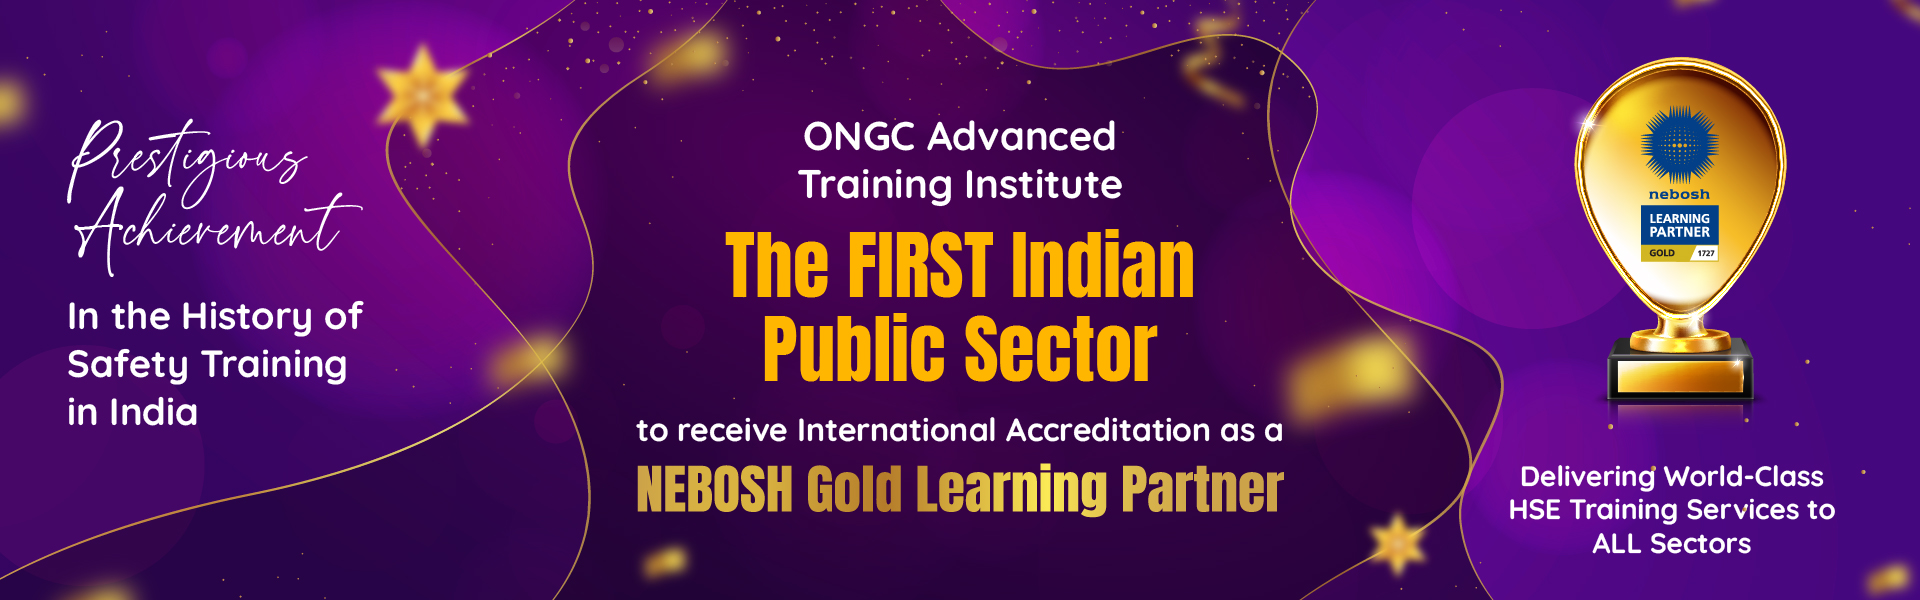 ONGC ATI NEBOSH Gold Learning Partner